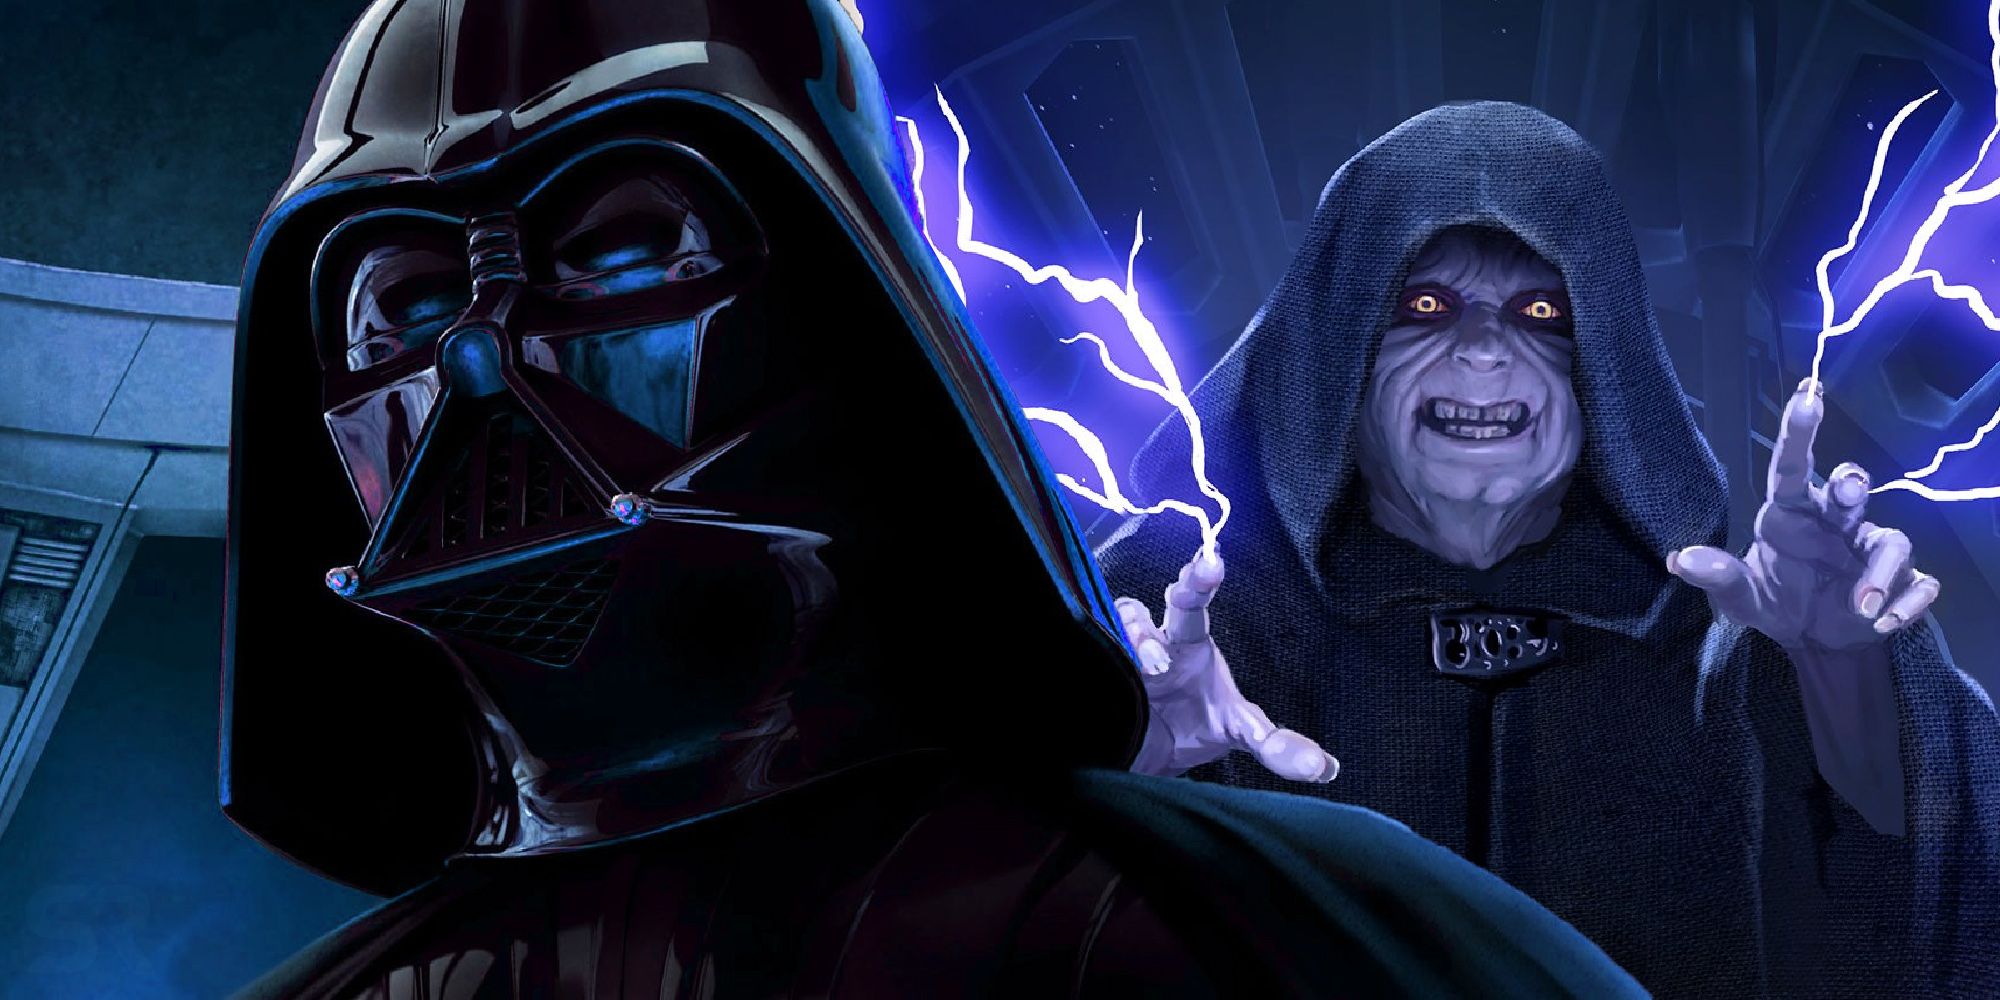 Darth Vader descubrió el culto Sith Rise of Skywalker de Palpatine